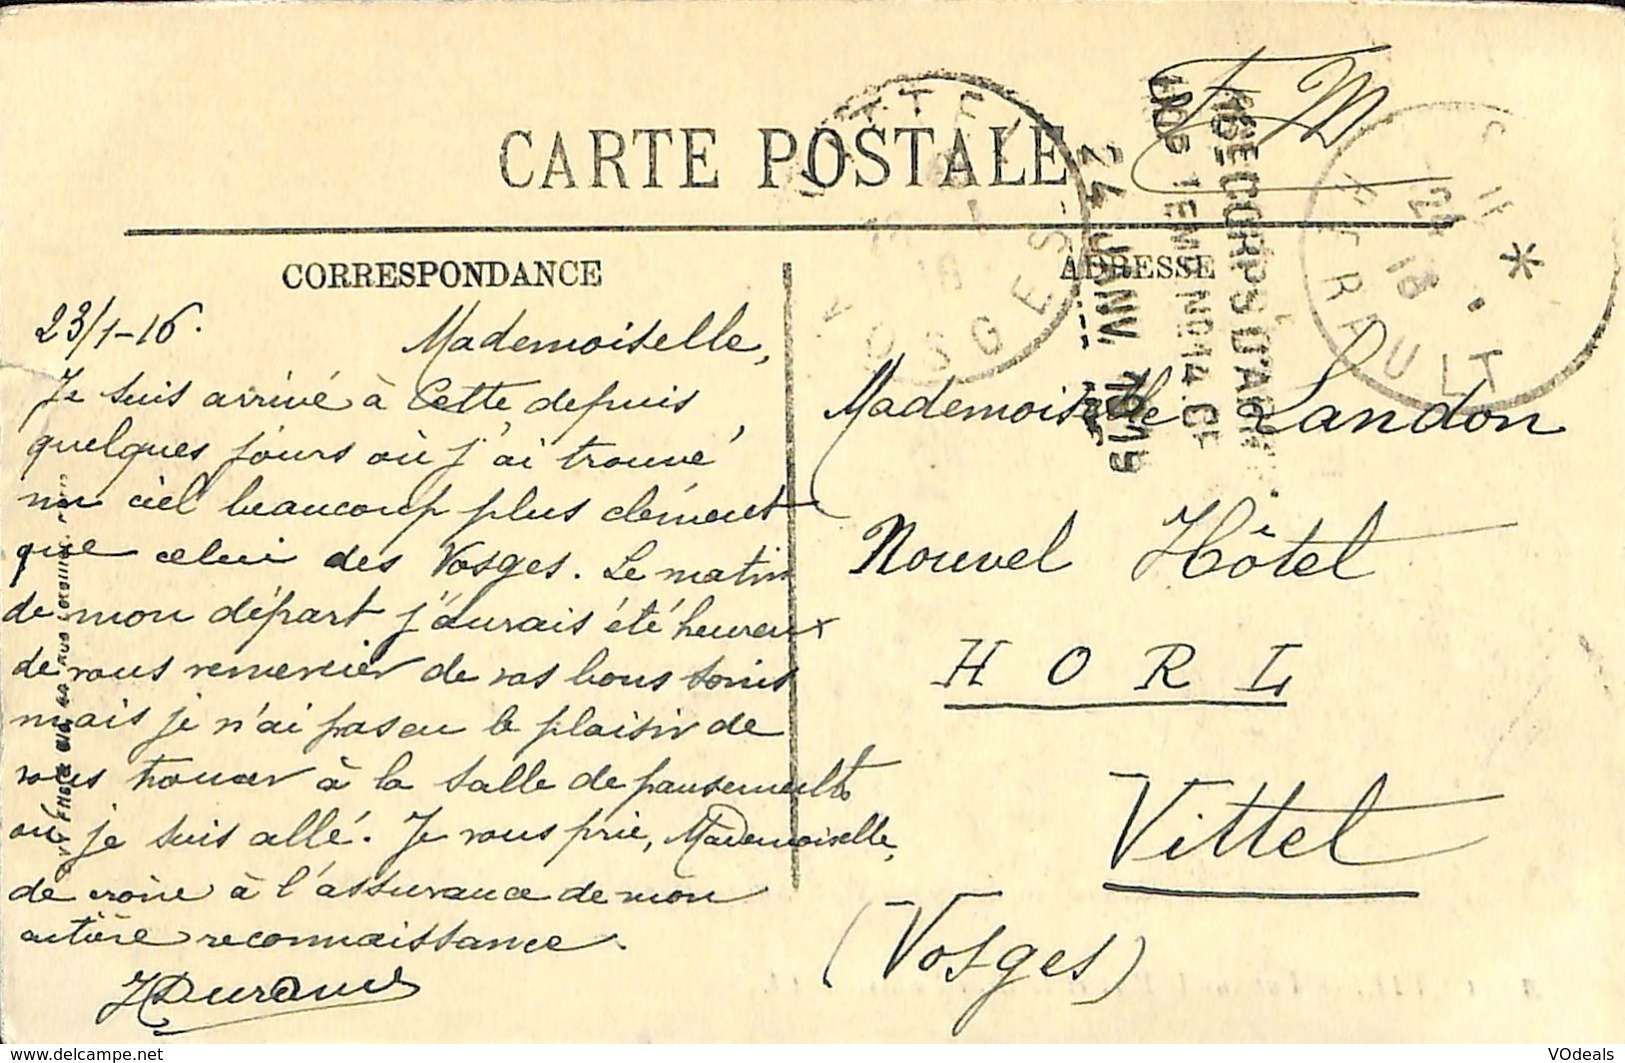 CPA - France - Lot de 10 cartes postales - Lot 05